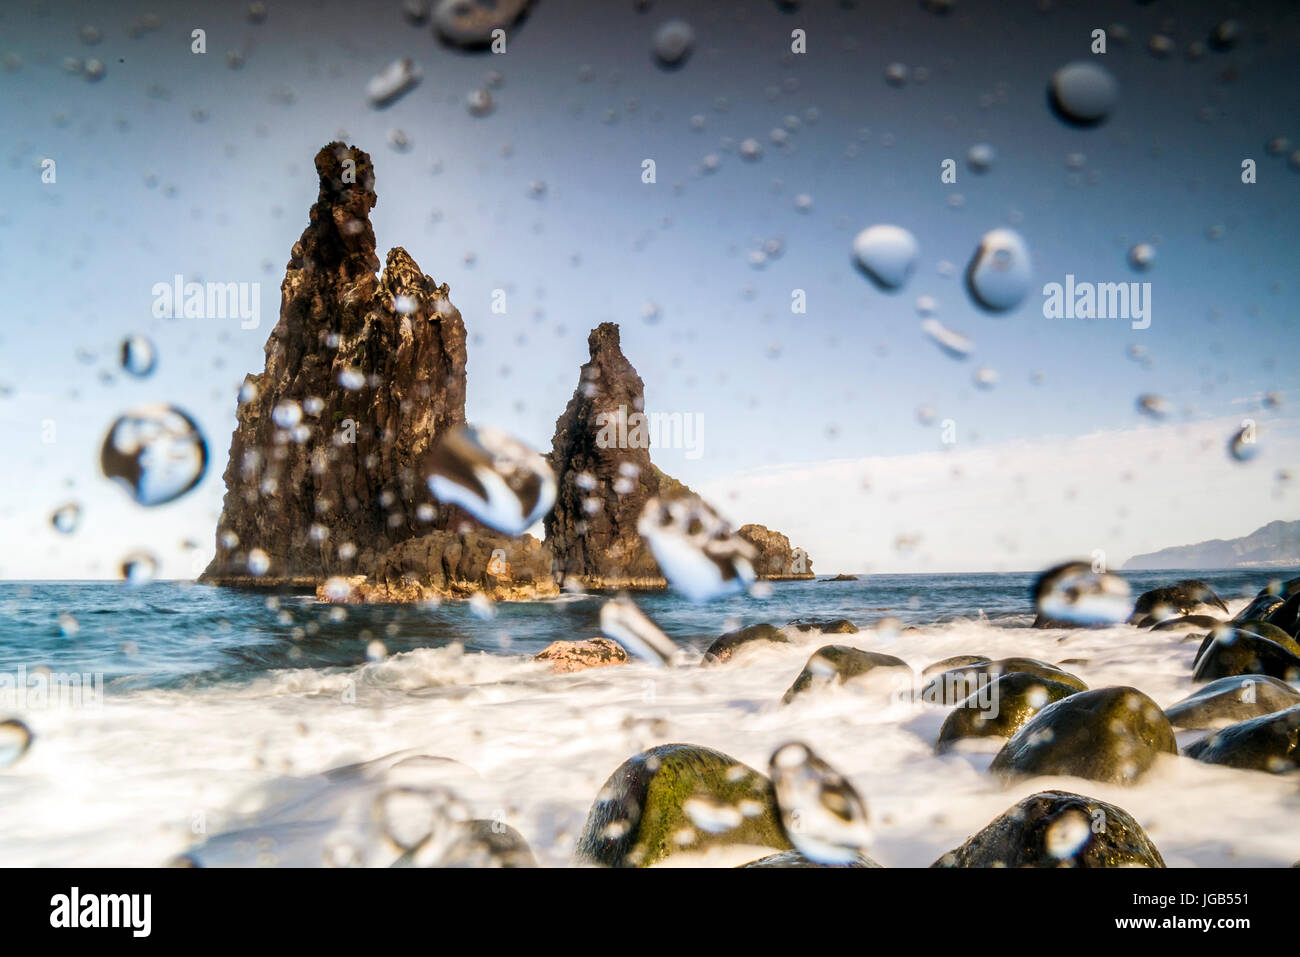 Gouttes d'eau sur l'objectif de photographier les roches dans l'océan Atlantique, Madère Banque D'Images